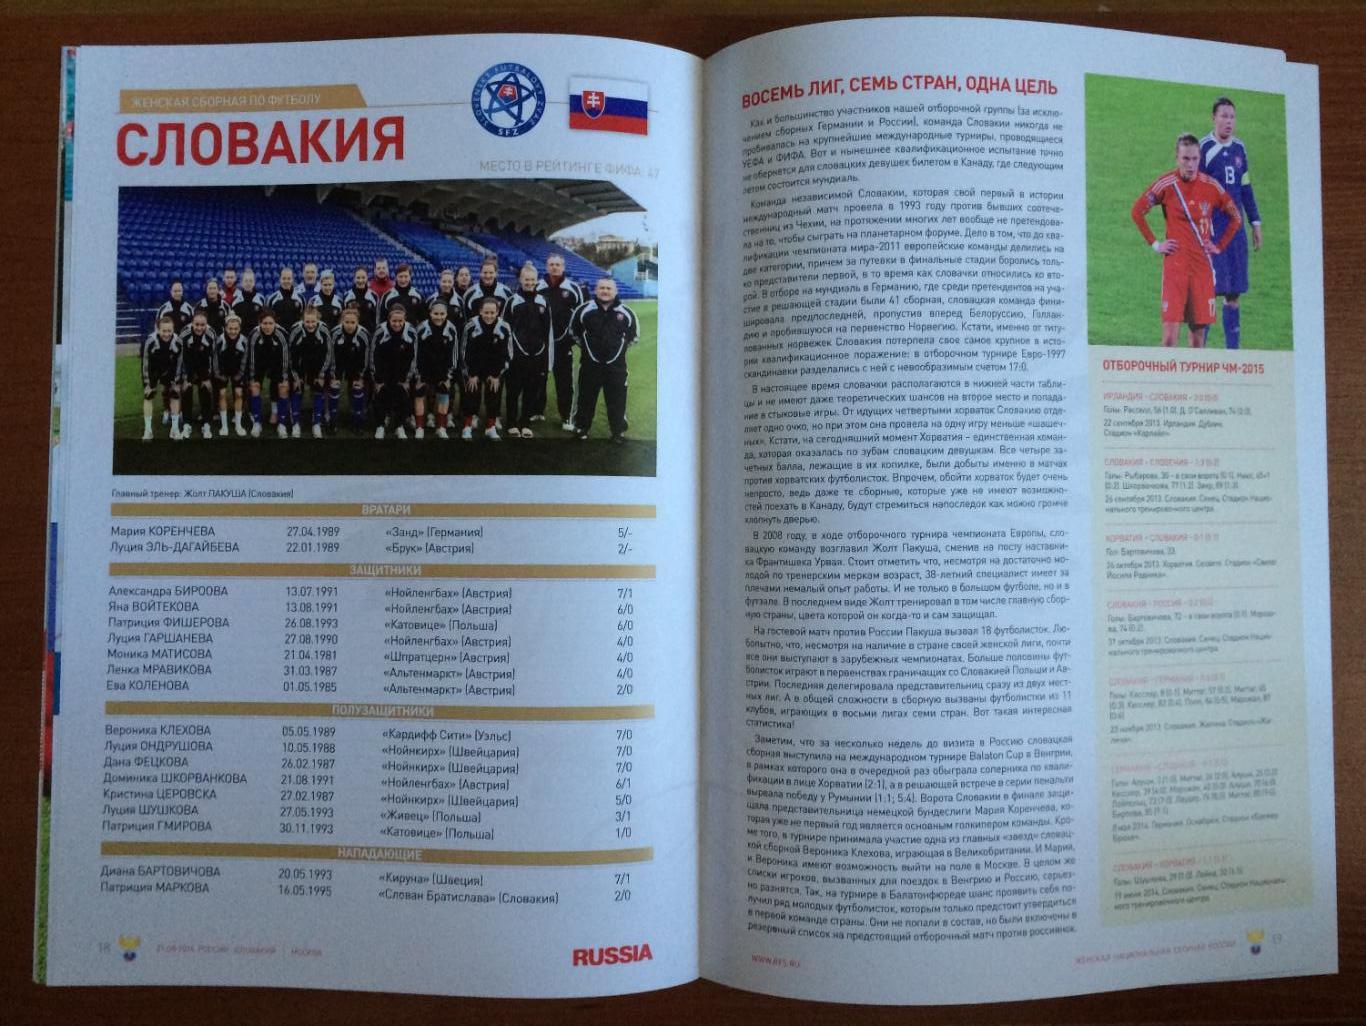 Программа футбол женщины Россия - Словакия 21.08.2014 год 4